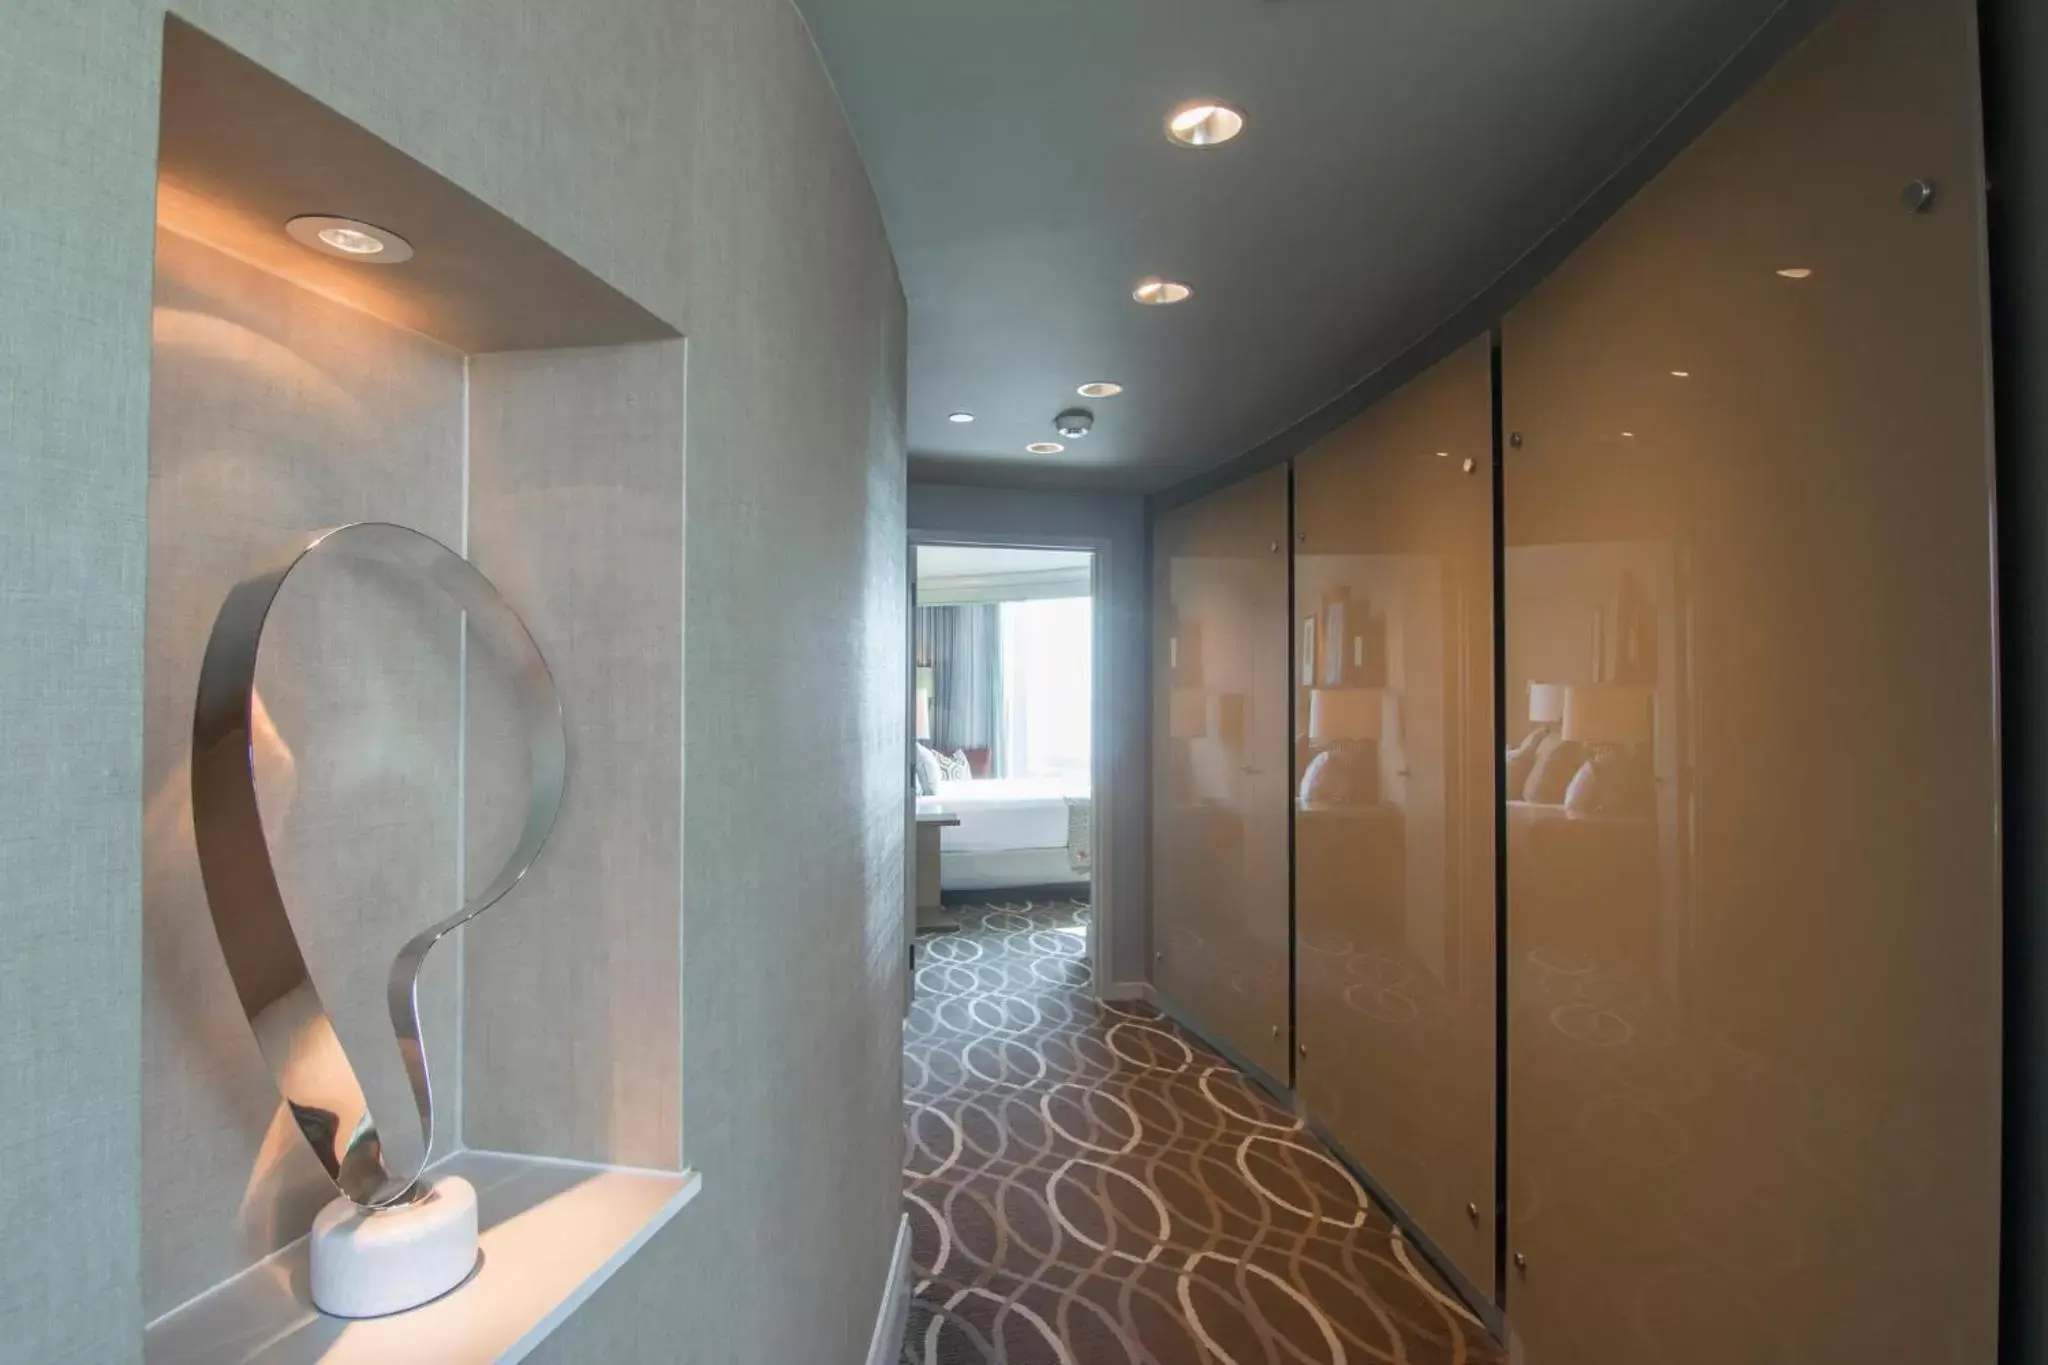 Bedroom, Bathroom in Omni Dallas Hotel